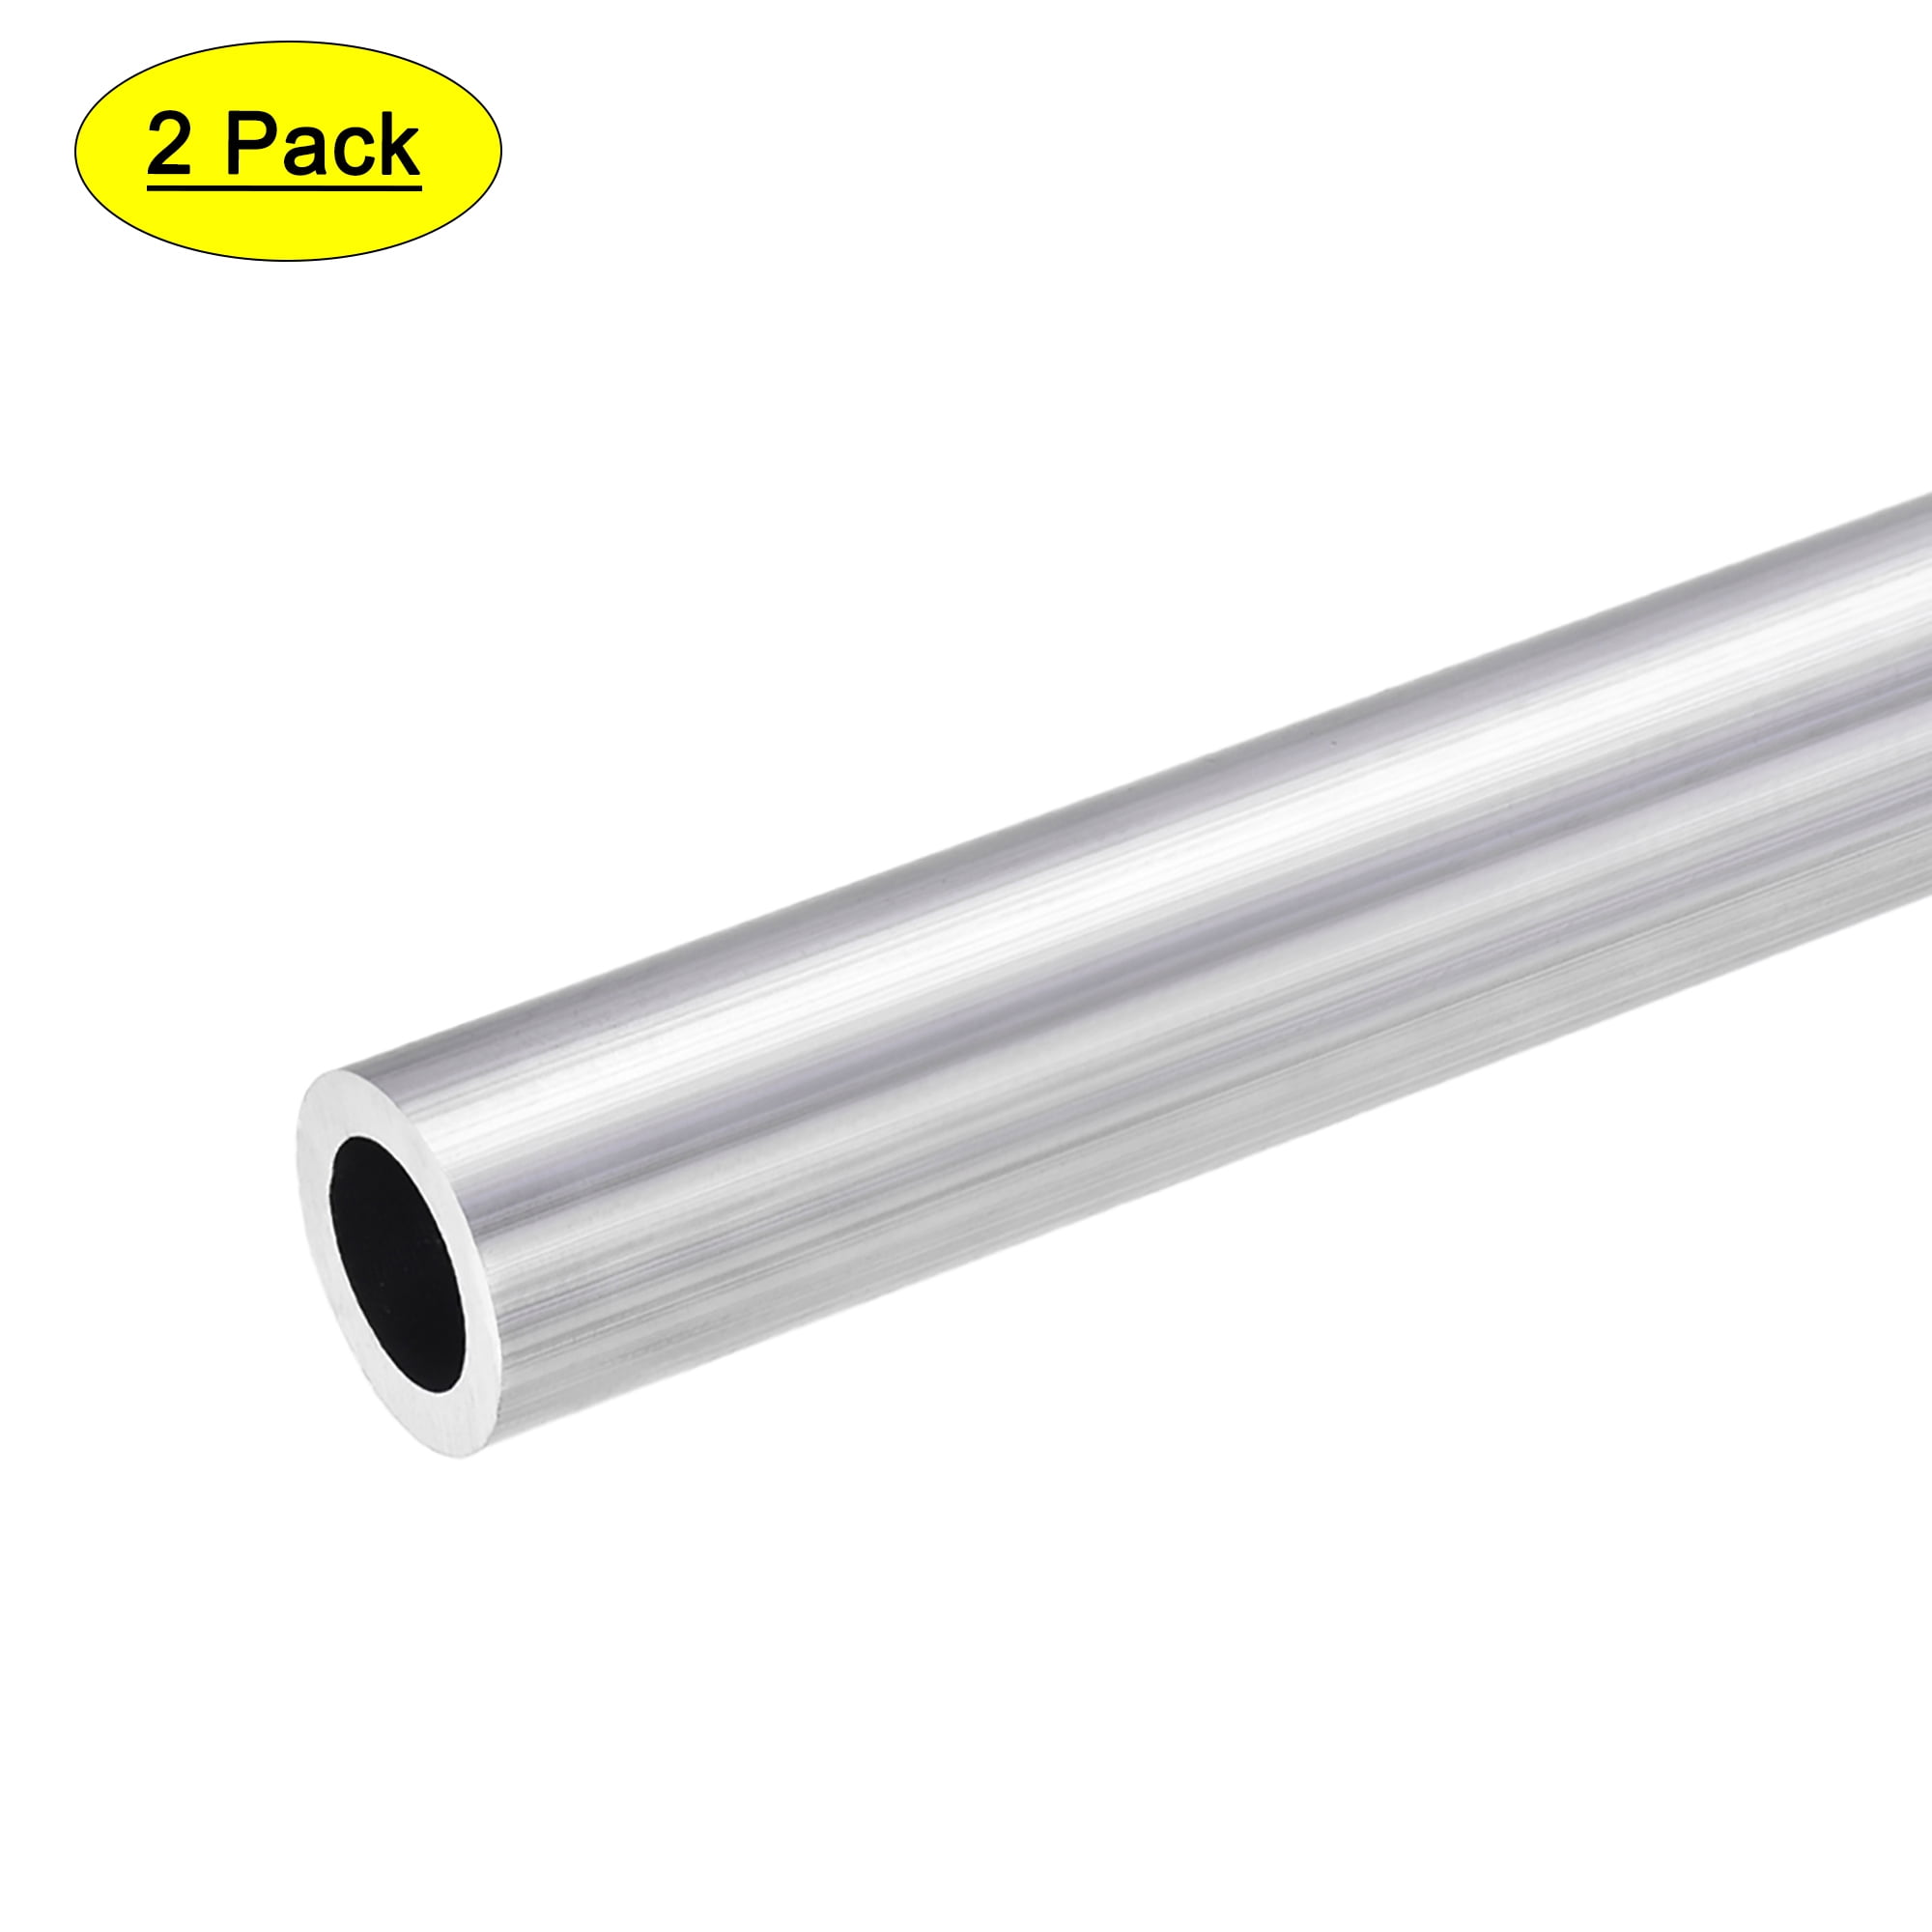 Round Aluminum Tube 6063 300 mm Length 19 mm OD 16 mm Internal Diameter Seamless Straight Aluminum Tube 